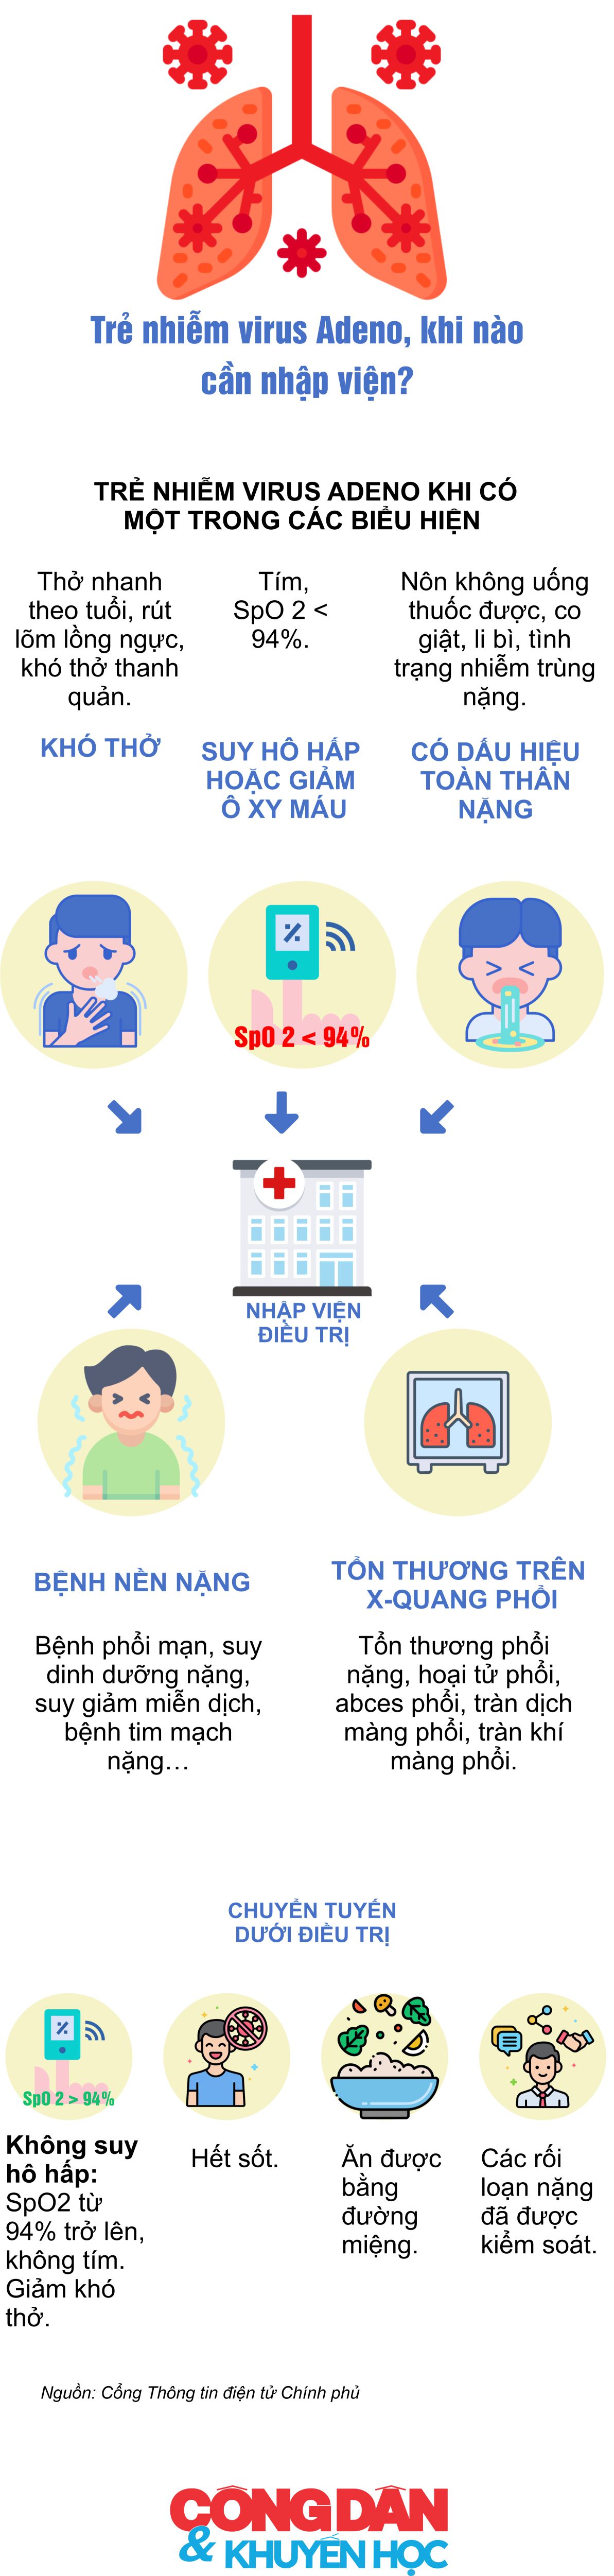 [Infographic] Trẻ nhiễm virus Adeno, khi nào cần nhập viện? - Ảnh 1.